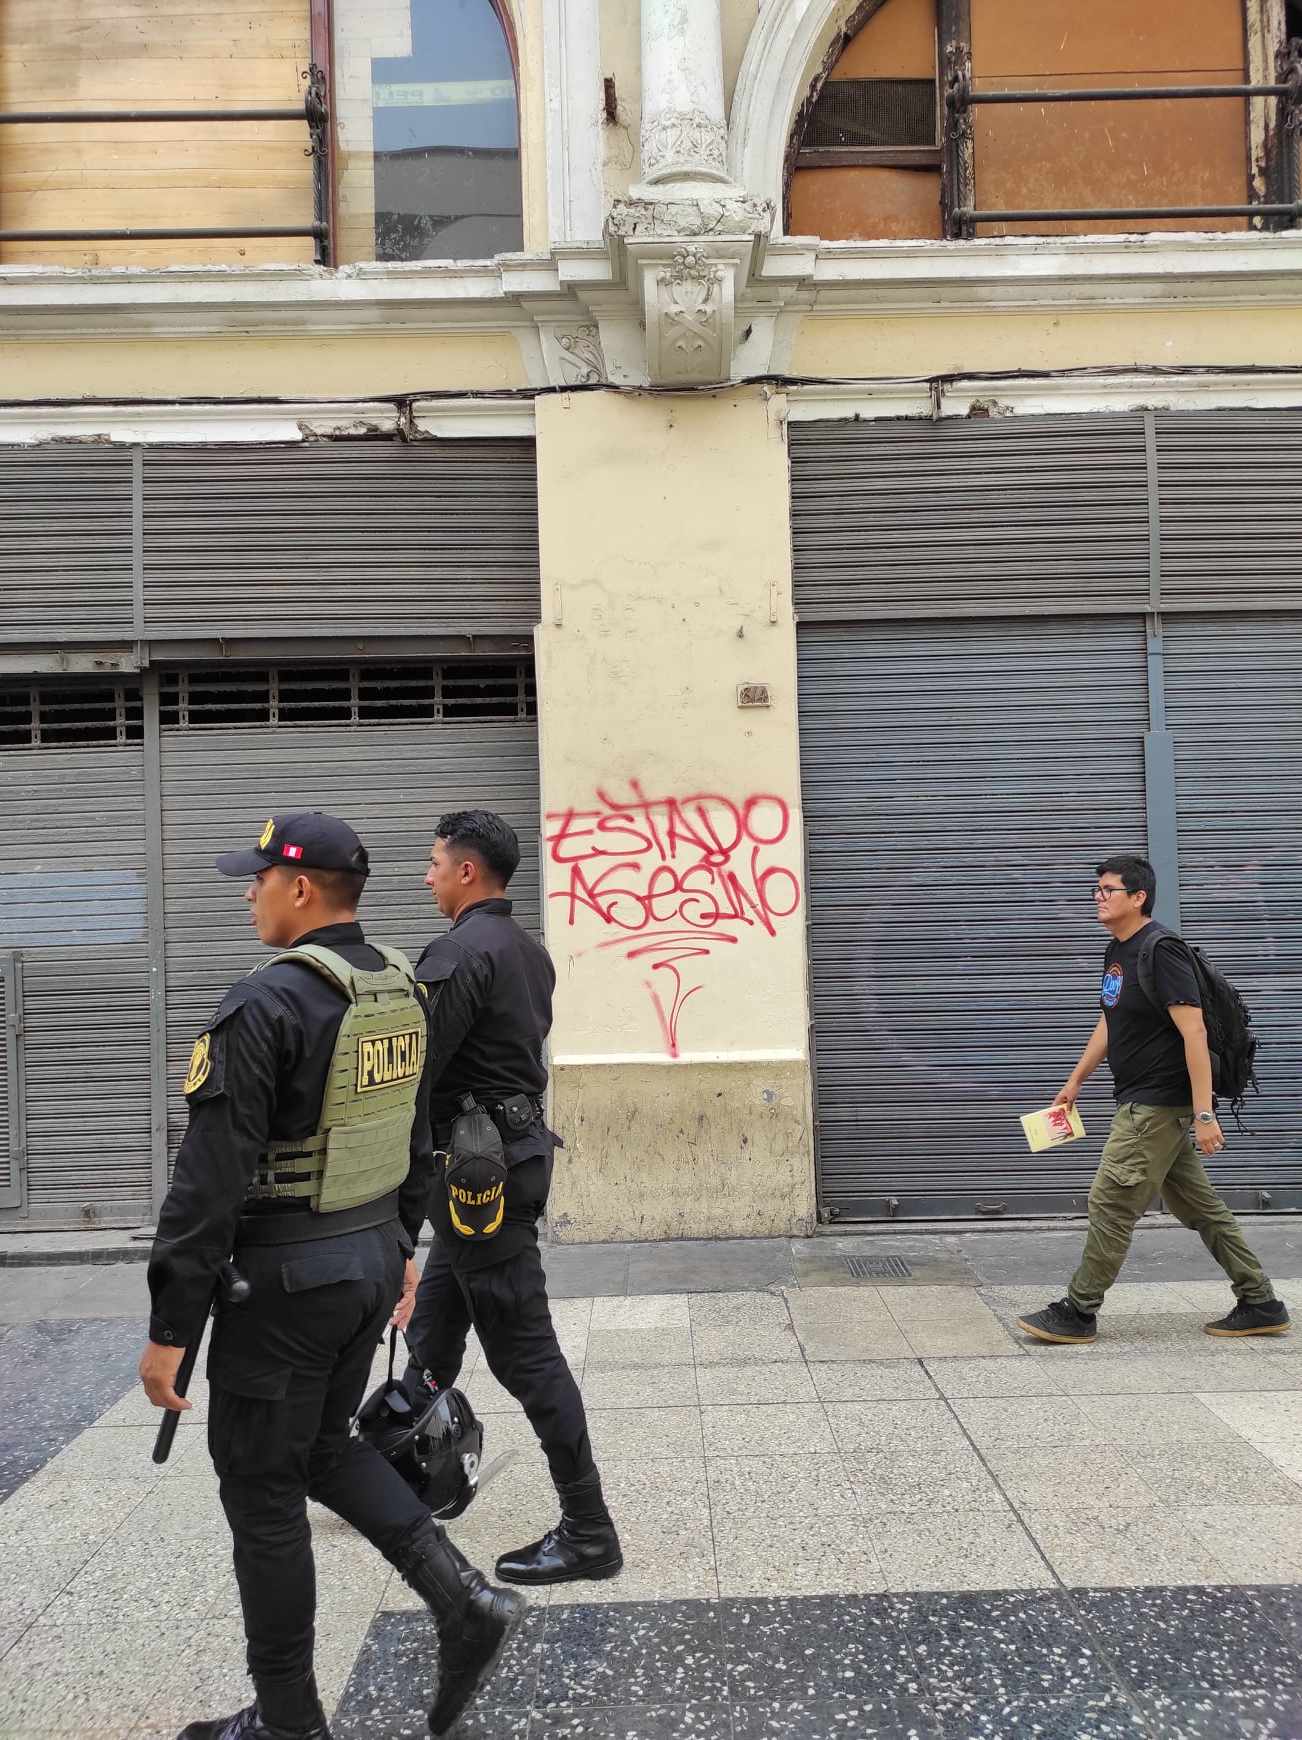 Sicherheitskräfte und ein Passant vor dem Grafitti:
"Mörderstaat!"
Foto: Aliza Yanes